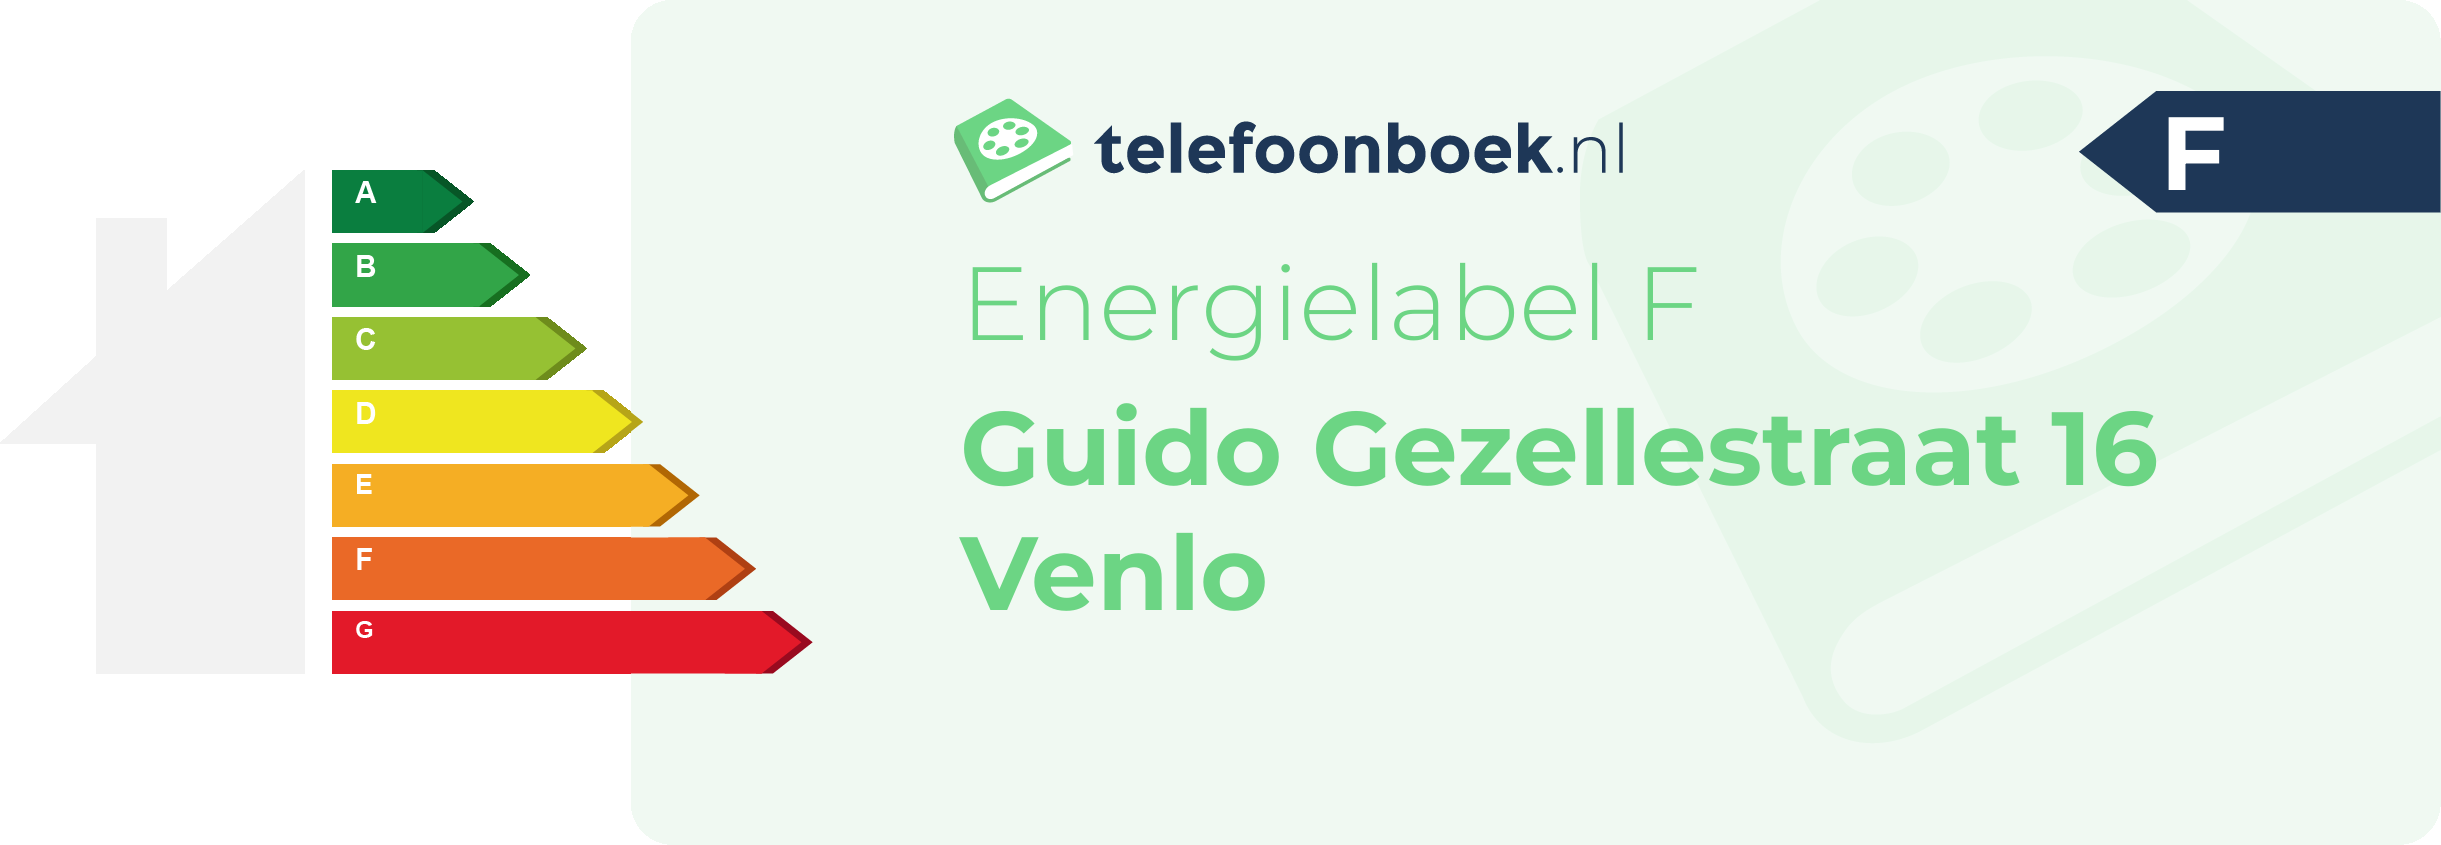 Energielabel Guido Gezellestraat 16 Venlo